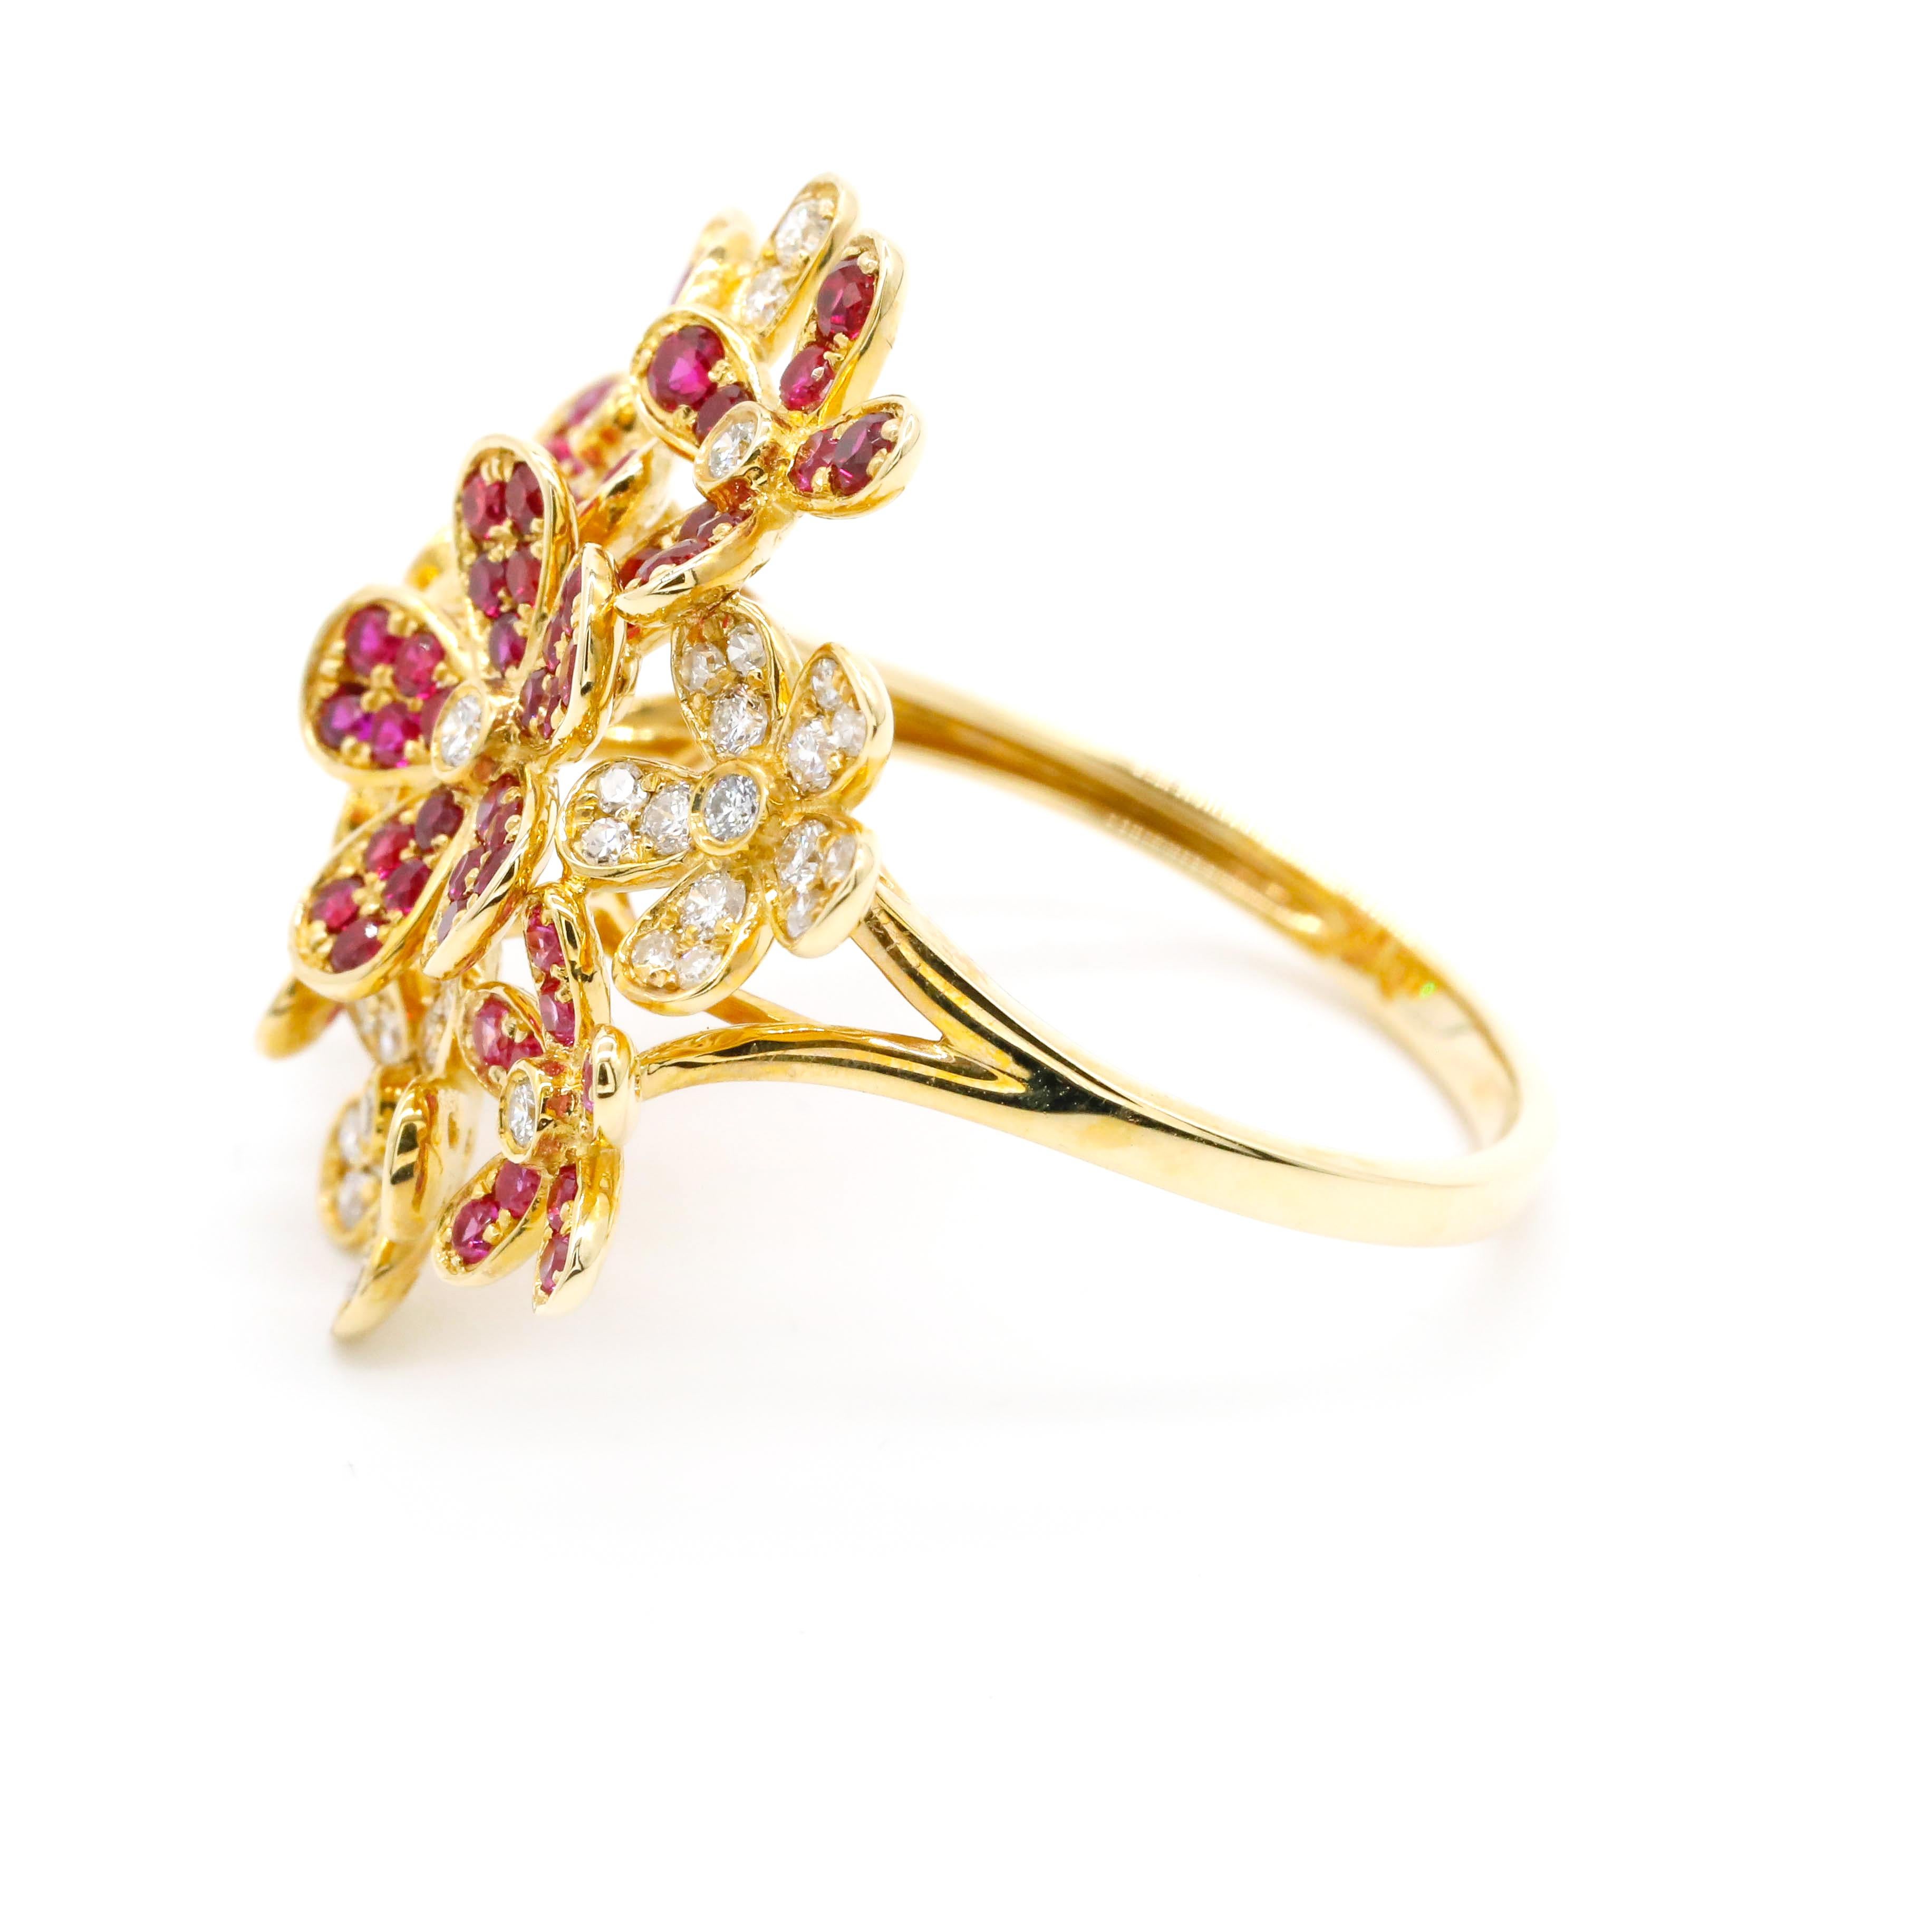 1,69 Karat Diamant Rubin Rosa Saphir Diamant Pave Blume 14K Gelbgold Wrap Ring

Dieser moderne Ring verfügt über insgesamt 0,44 Karat Diamanten runde Form und 1,25 Karat rosa Saphir Edelstein in 14K Gelbgold gesetzt.

Wir garantieren für alle